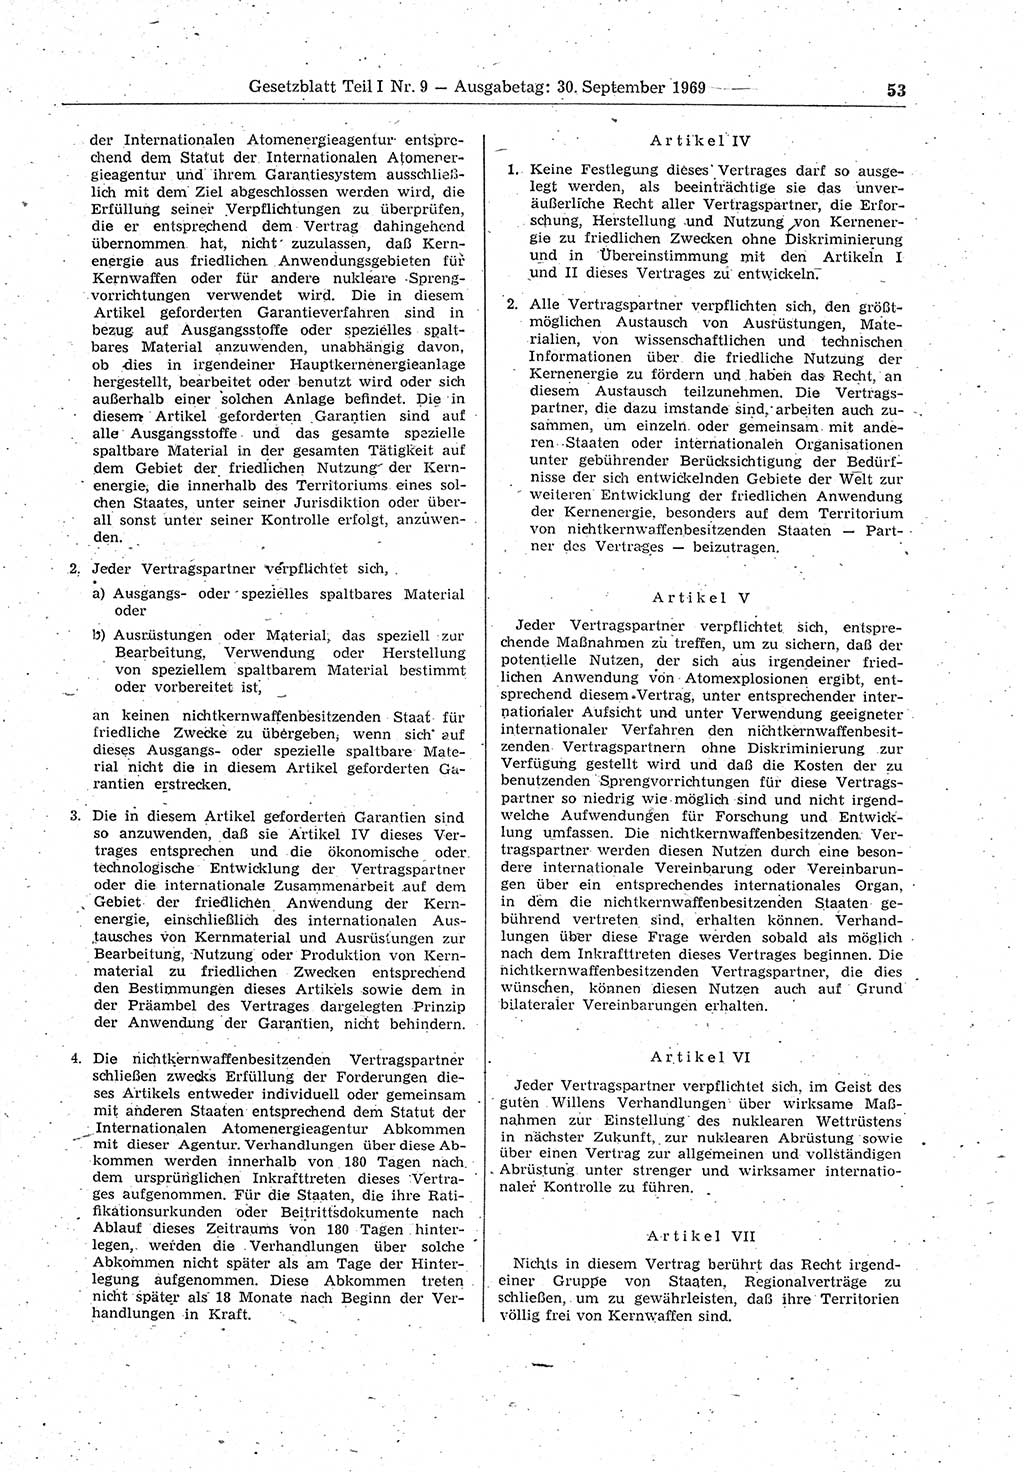 Gesetzblatt (GBl.) der Deutschen Demokratischen Republik (DDR) Teil Ⅰ 1969, Seite 53 (GBl. DDR Ⅰ 1969, S. 53)